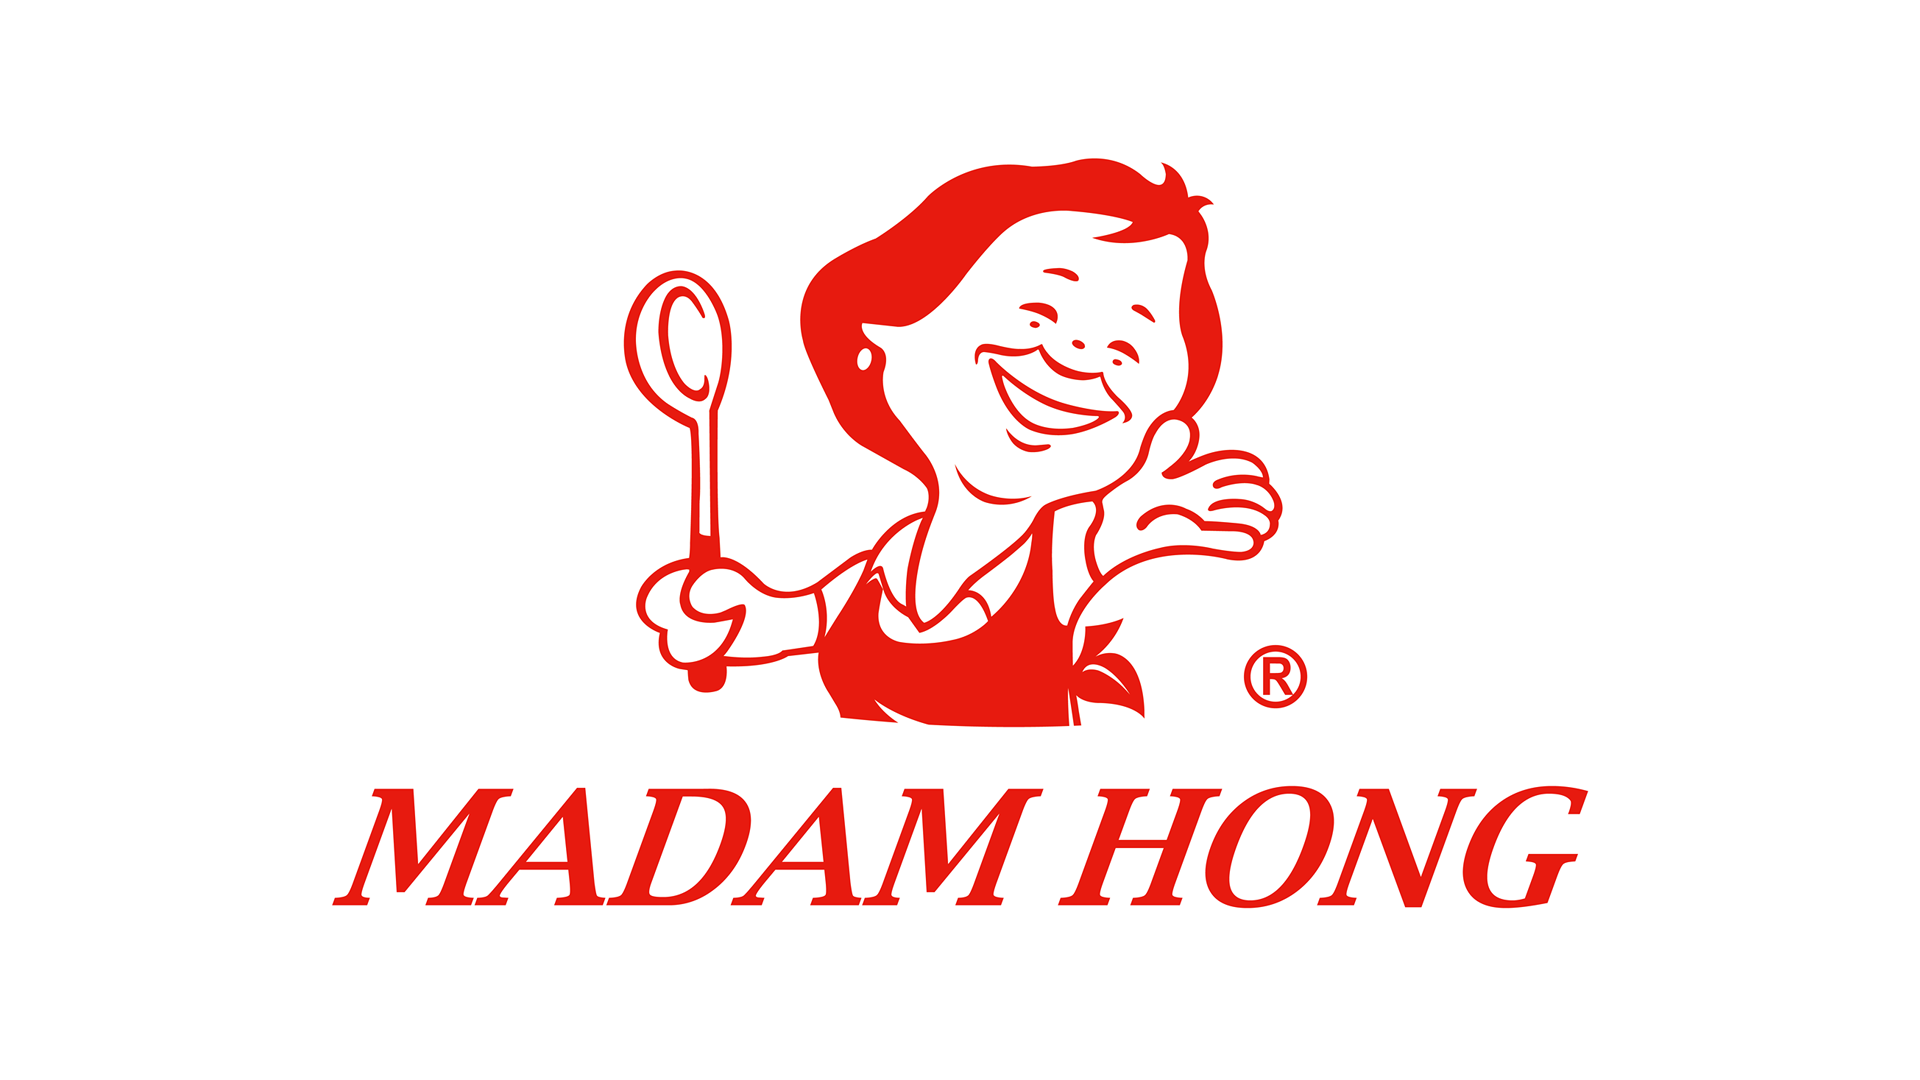 MADAM HONG